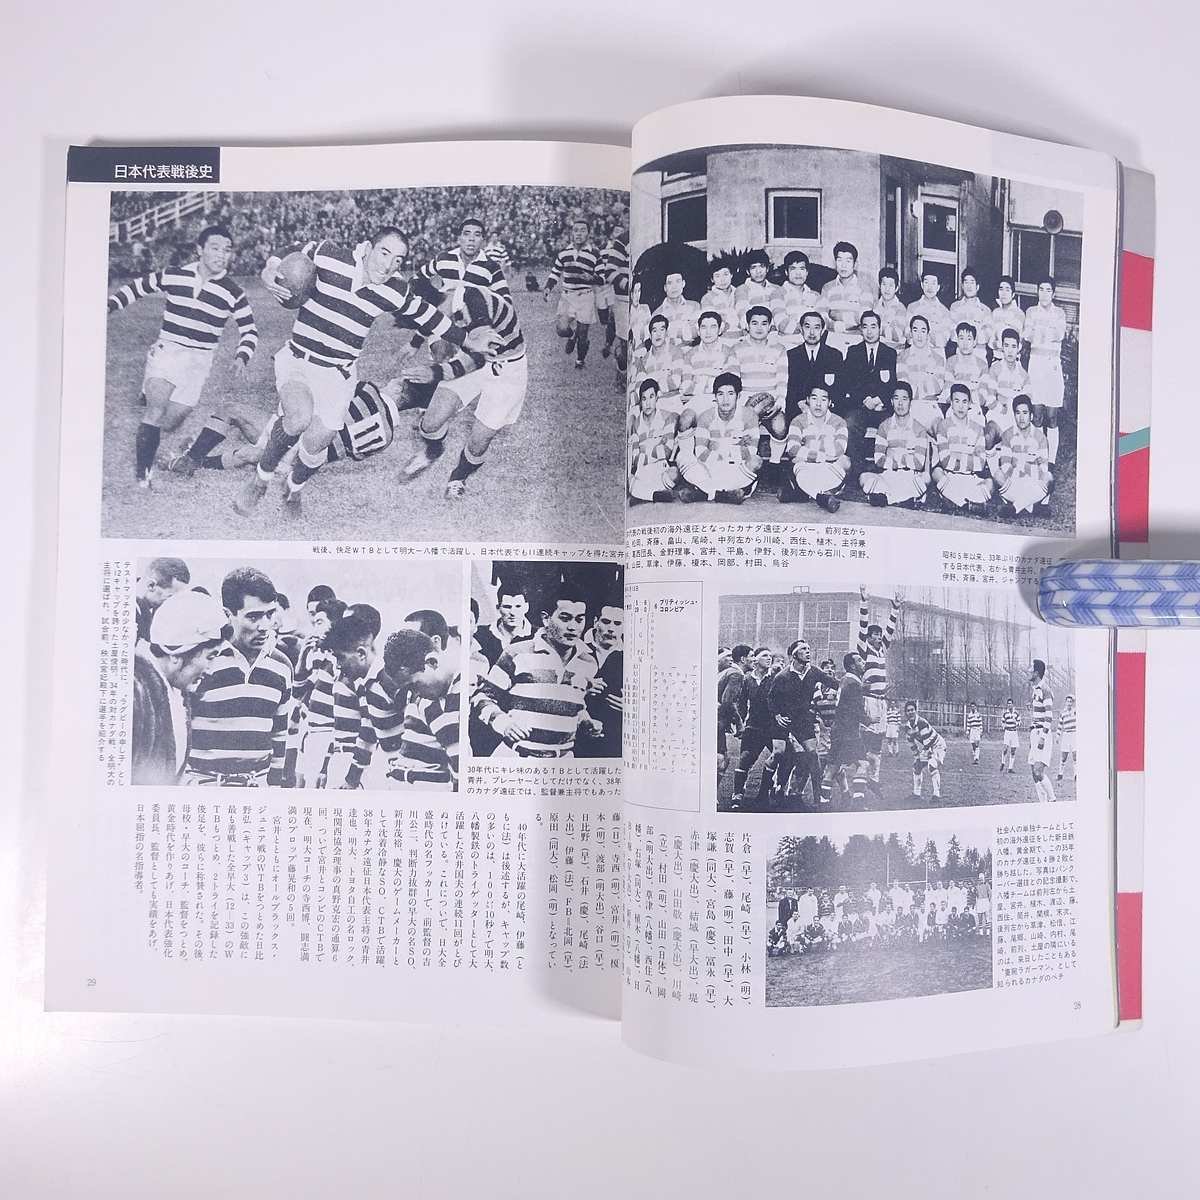 1945～1985 激動のスポーツ40年史 13 ラグビー ベースボール・マガジン社 1986 大型本 スポーツ 歴史 日本史 記録写真集_画像8